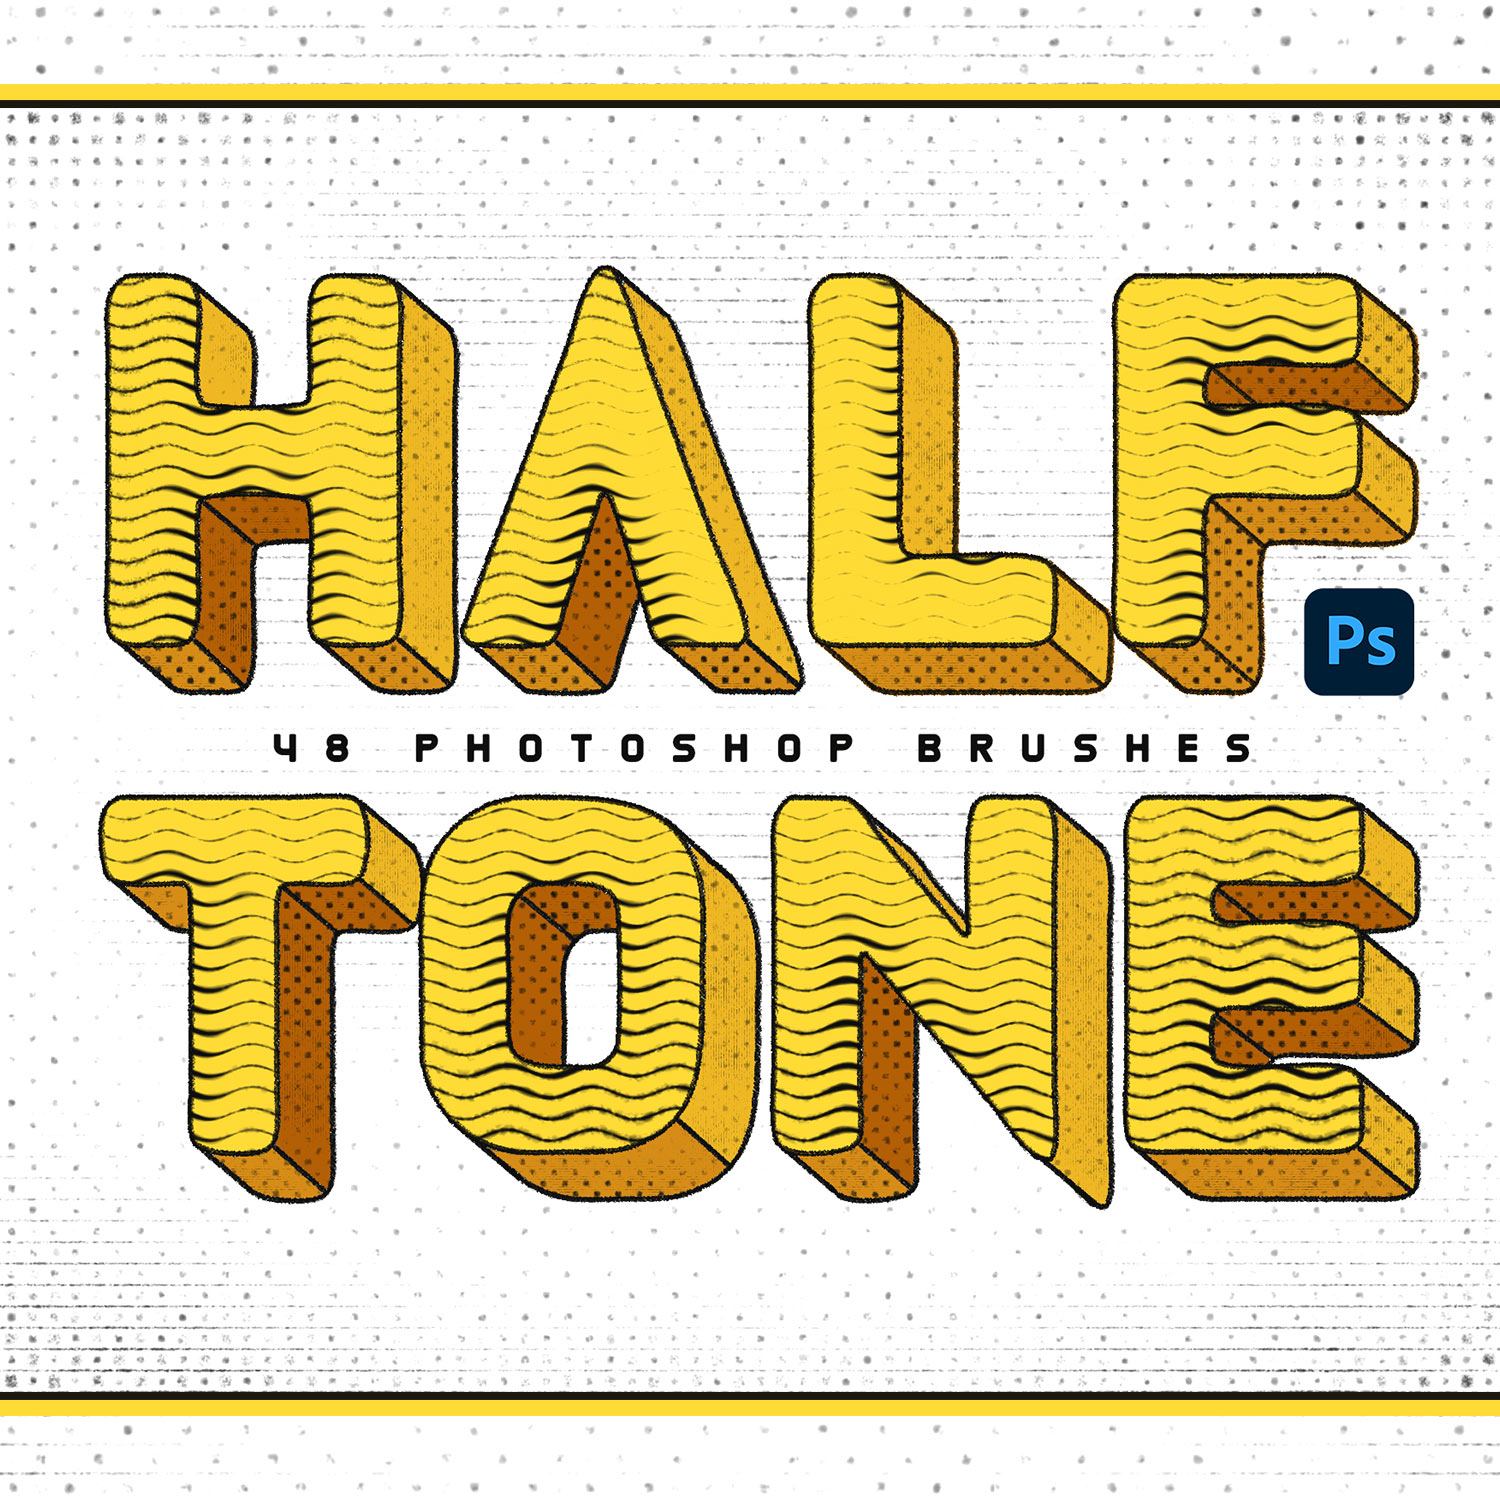 Halftone Photoshop Brushes cover image.